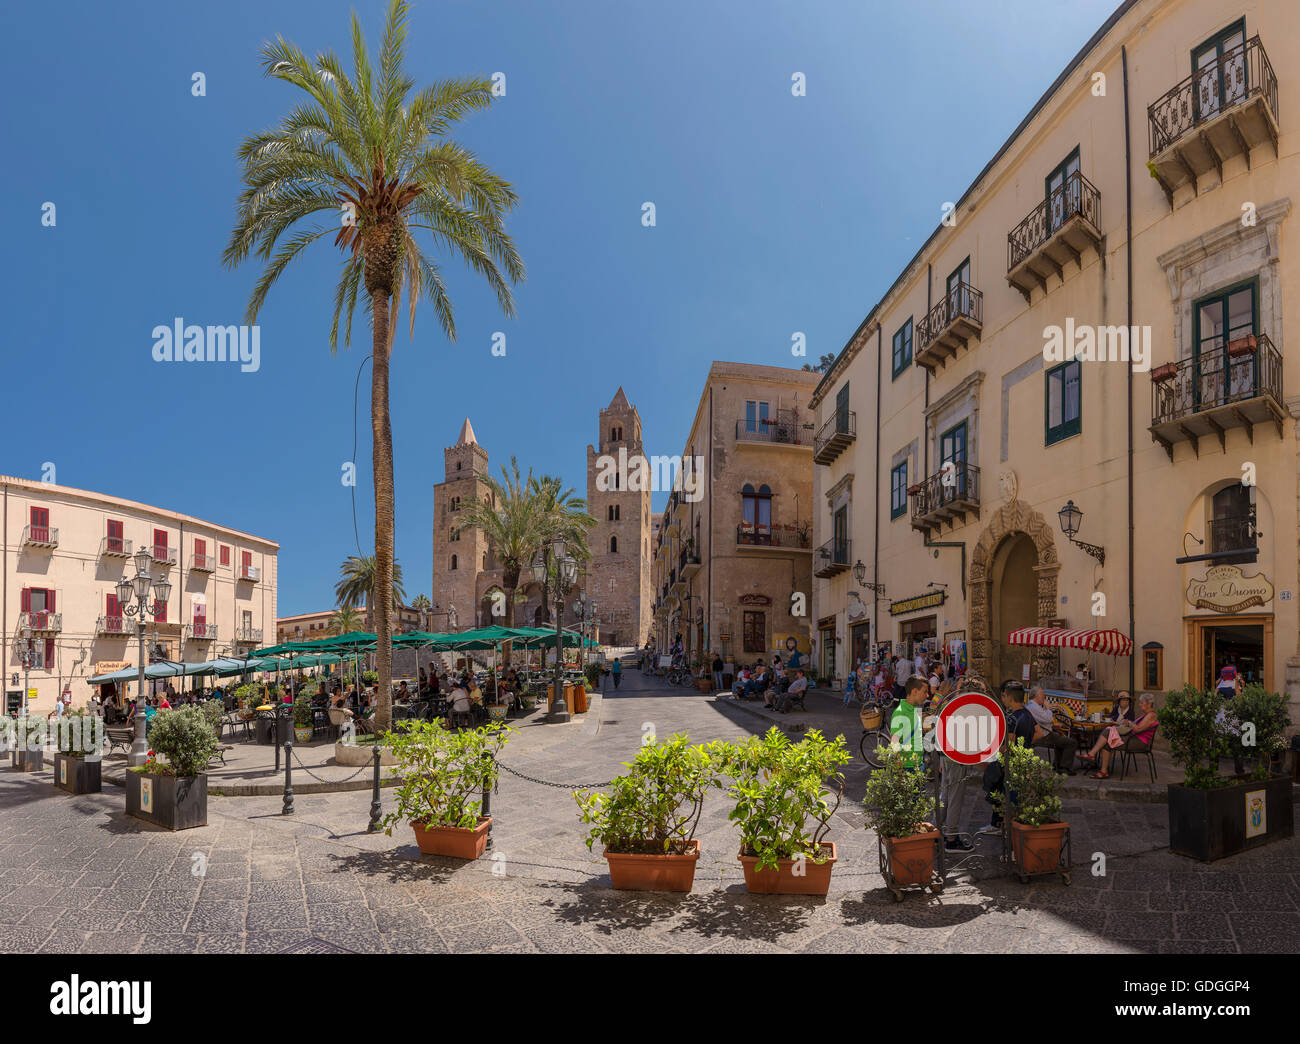 Plaza con cafés al aire libre, sombrillas y palmeras,Catedral de Cefalu Foto de stock